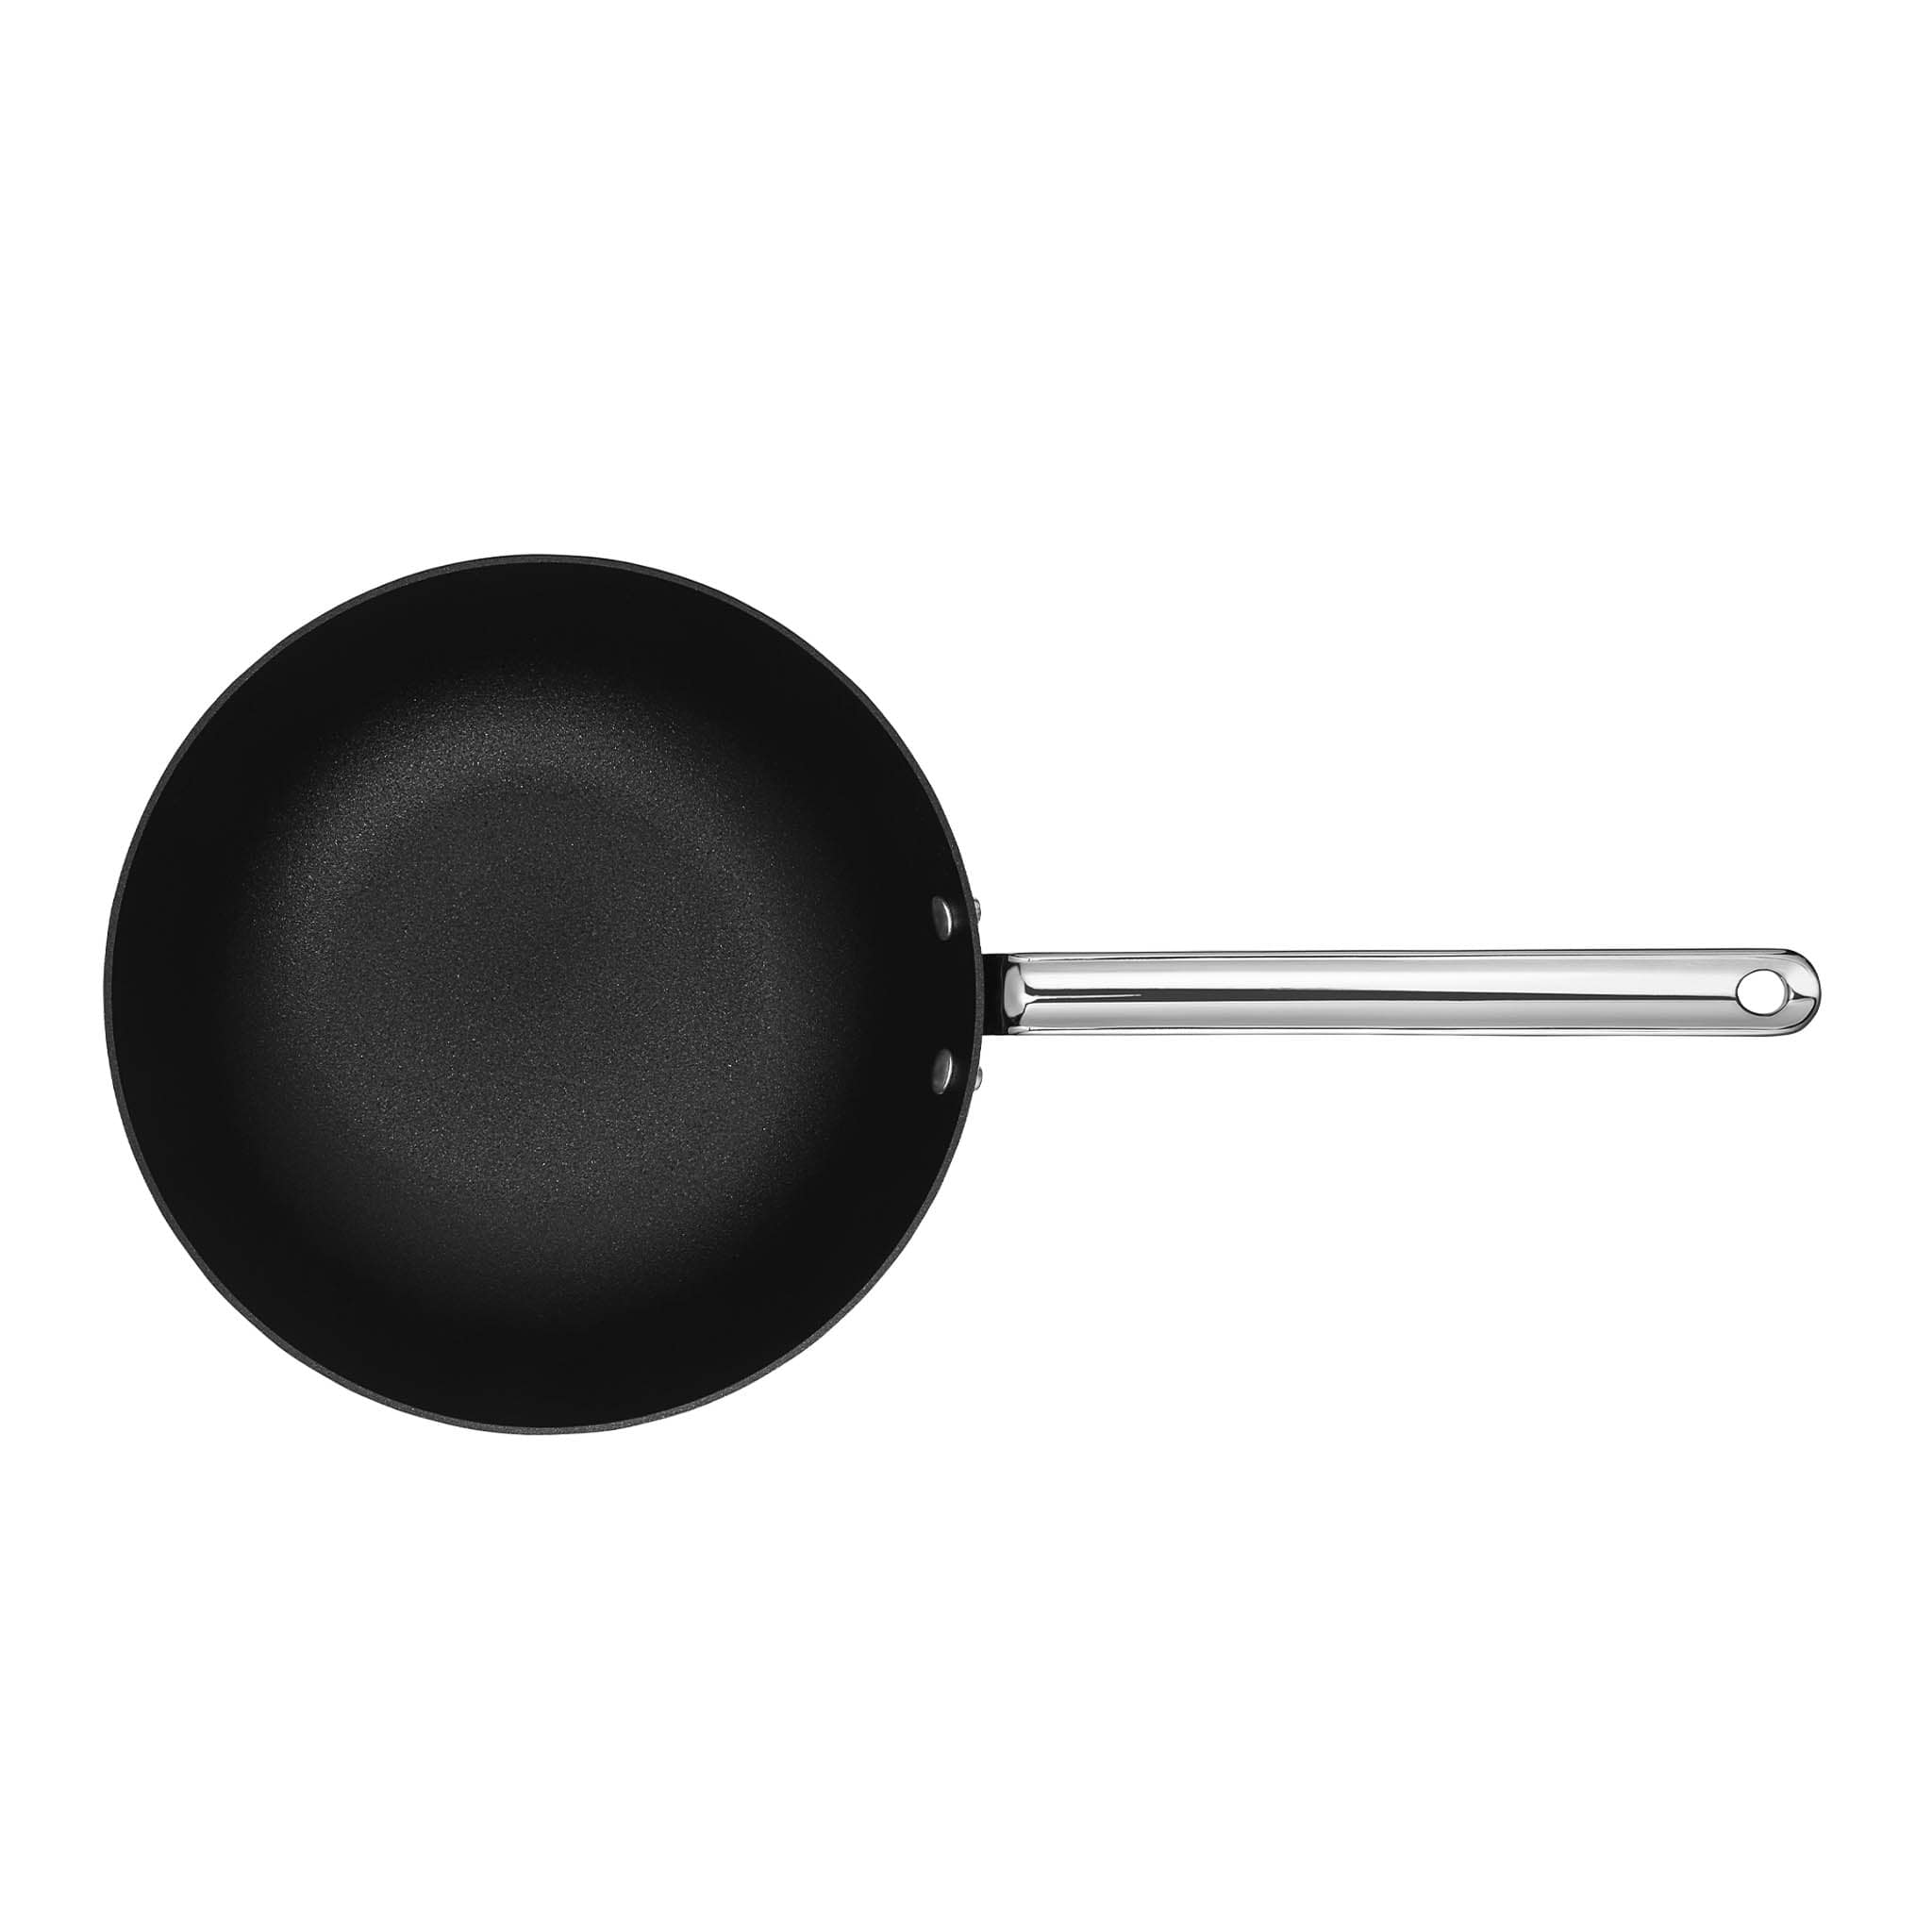 Scanpan TechnIQ Non-Stick Curved Saute Pan, 26cm